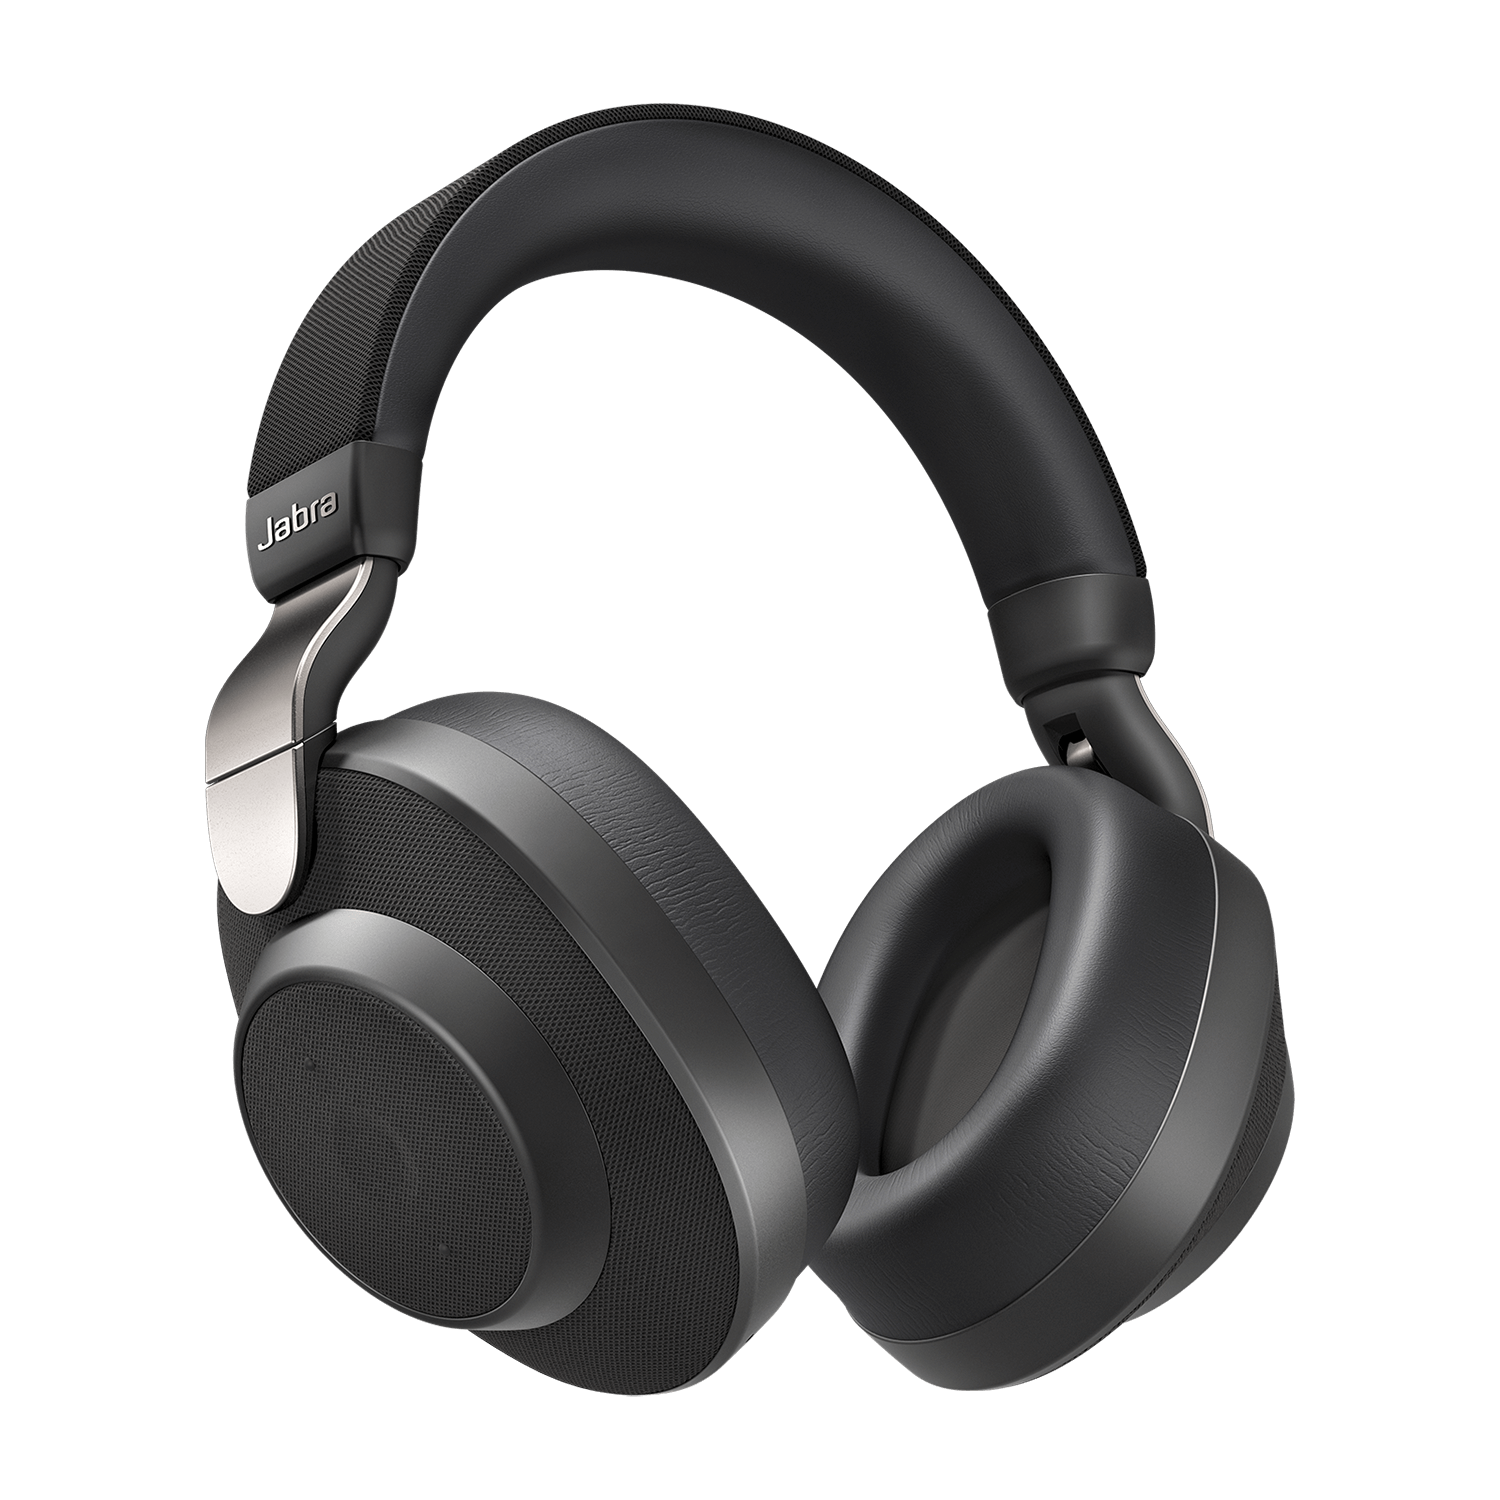 terug Schuldenaar typist Wireless noise cancelling headphones with SmartSound | Jabra Elite 85h